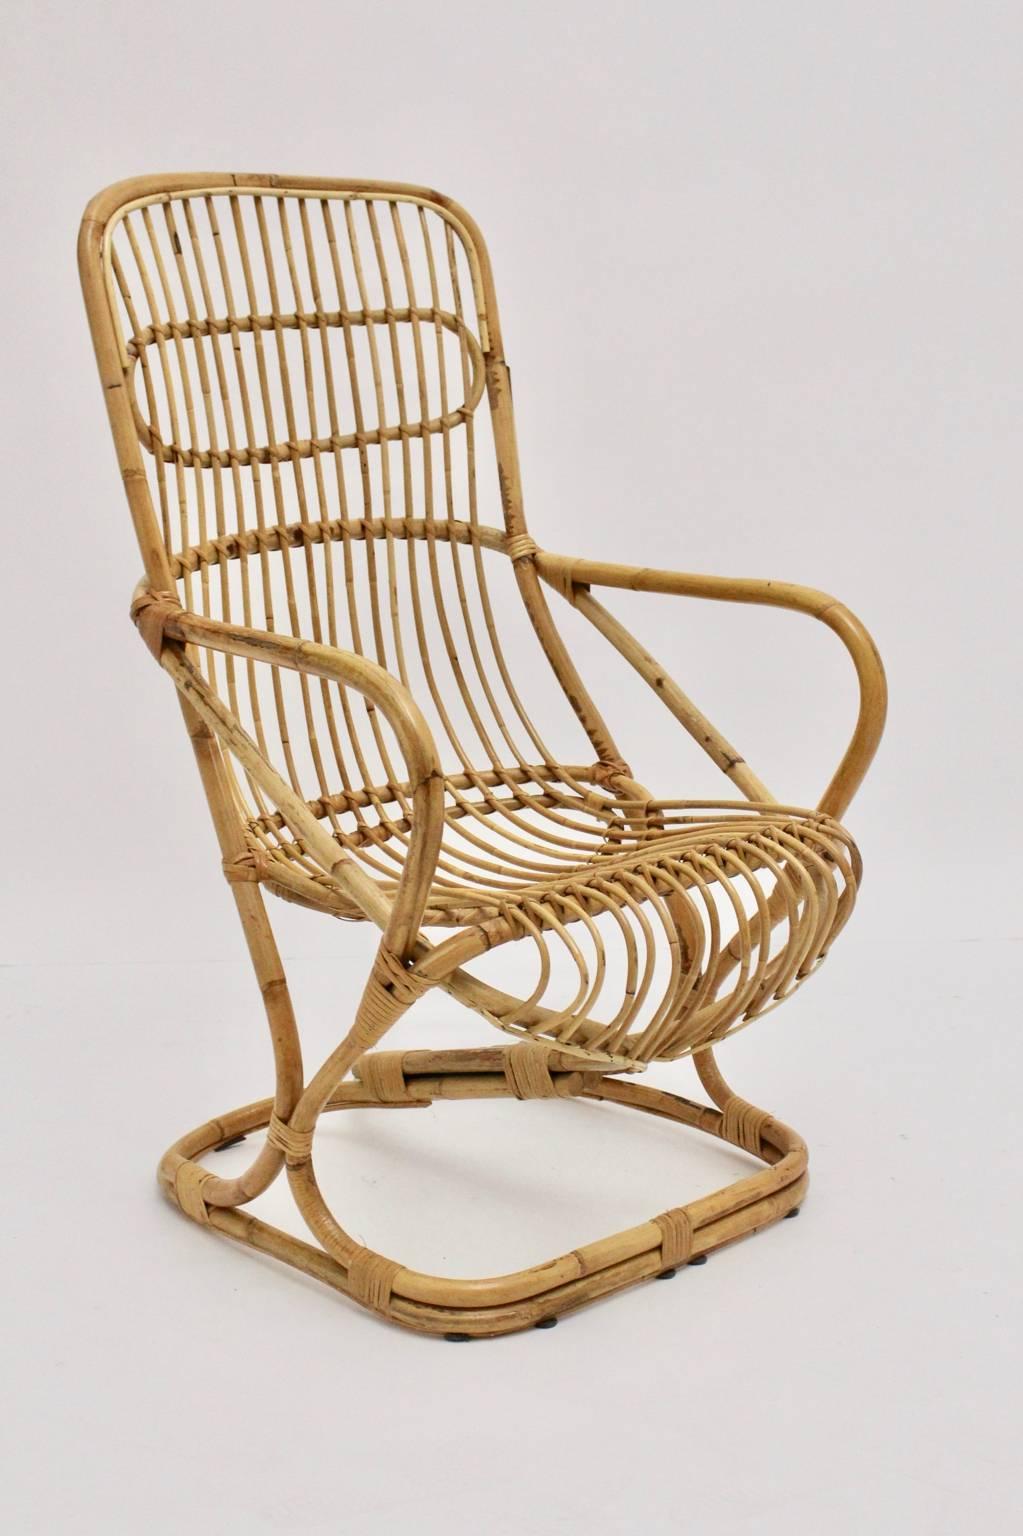 Ce fauteuil à haut dossier en bambou vintage mid century modern Italy, 1960s est très confortable.
L'état est très bon avec des signes mineurs d'âge et d'utilisation.
Mesures approximatives :
Largeur : 62 cm
Profondeur : 73,5 cm
Hauteur : 107